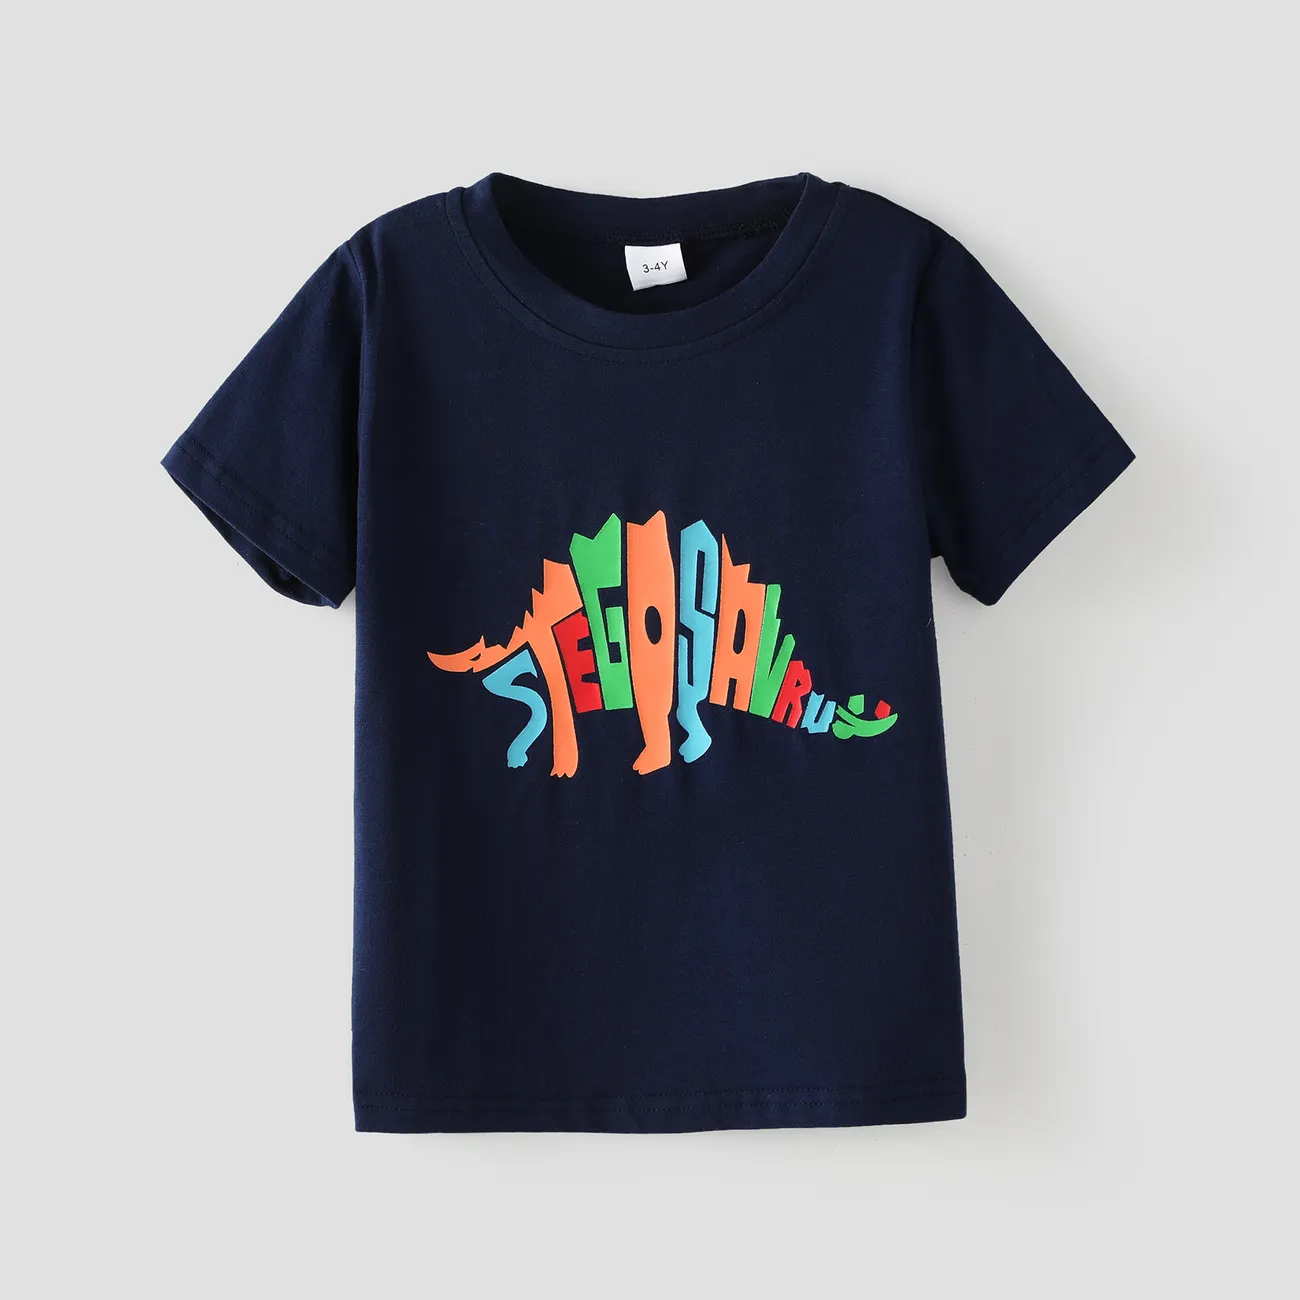 2 Stück Kleinkinder Jungen Kindlich Dinosaurier T-Shirt-Sets tiefblau big image 1